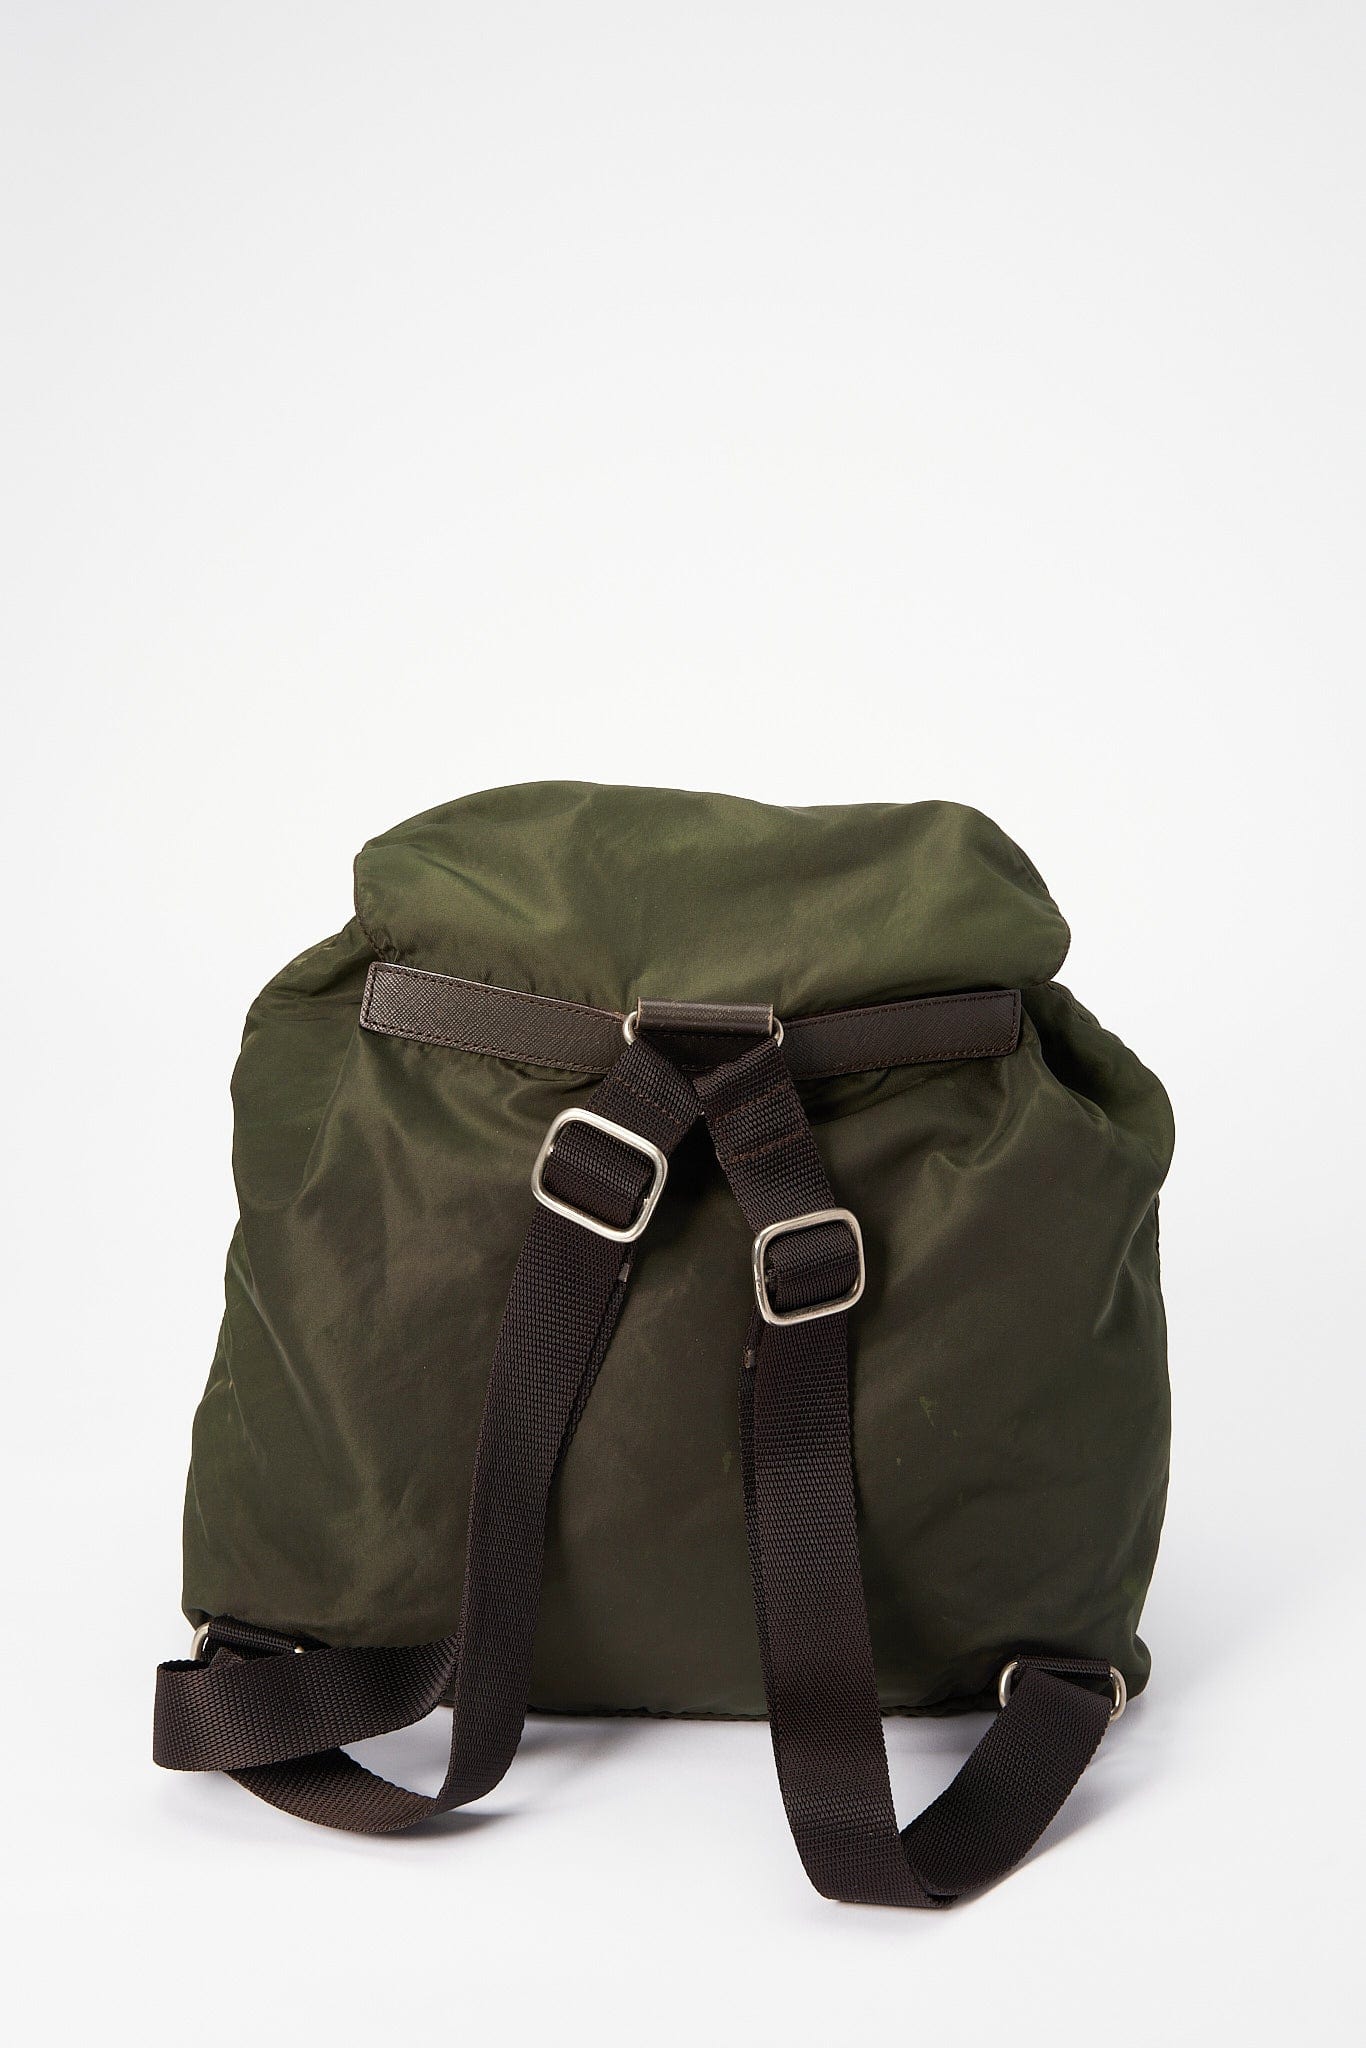 Prada Green Nylon Backpack